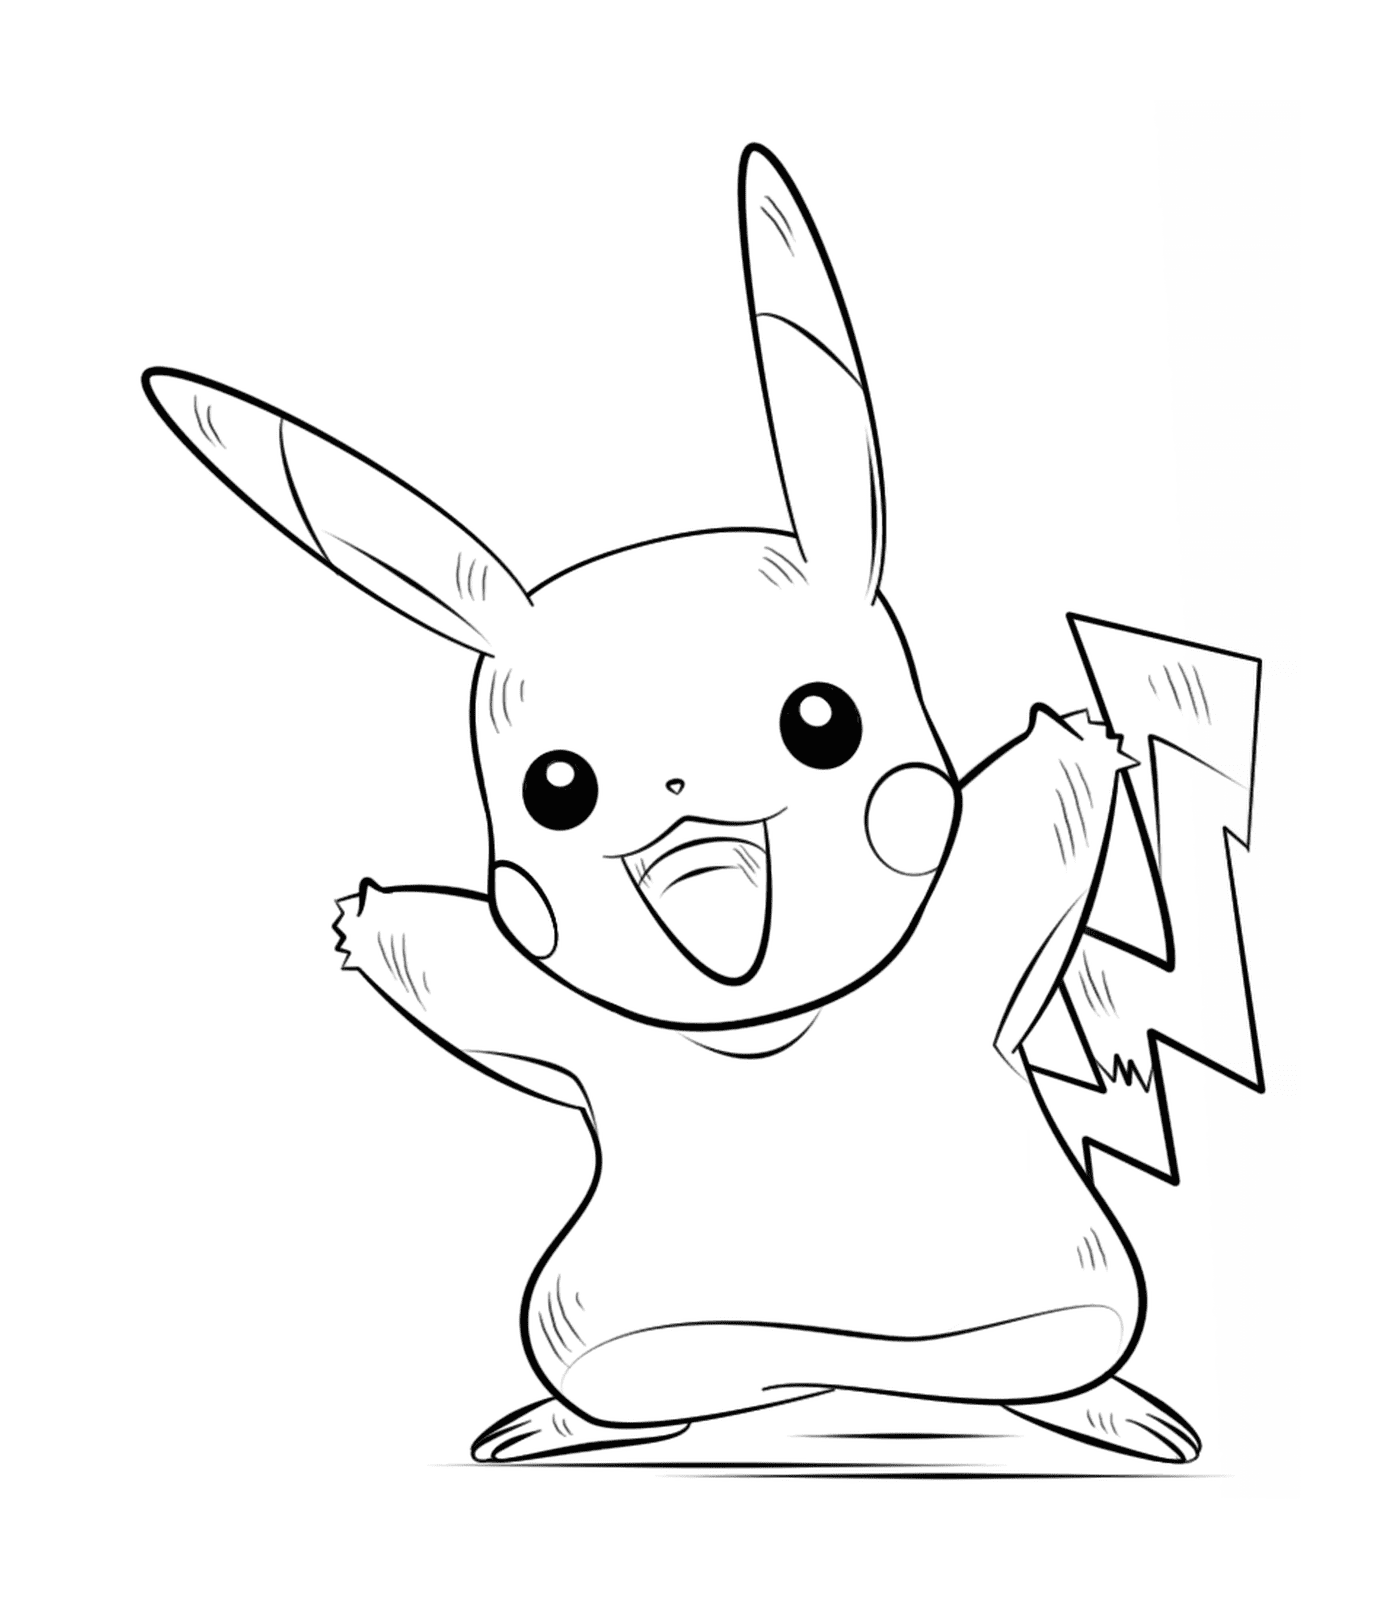  Pikachu hält Blitz 